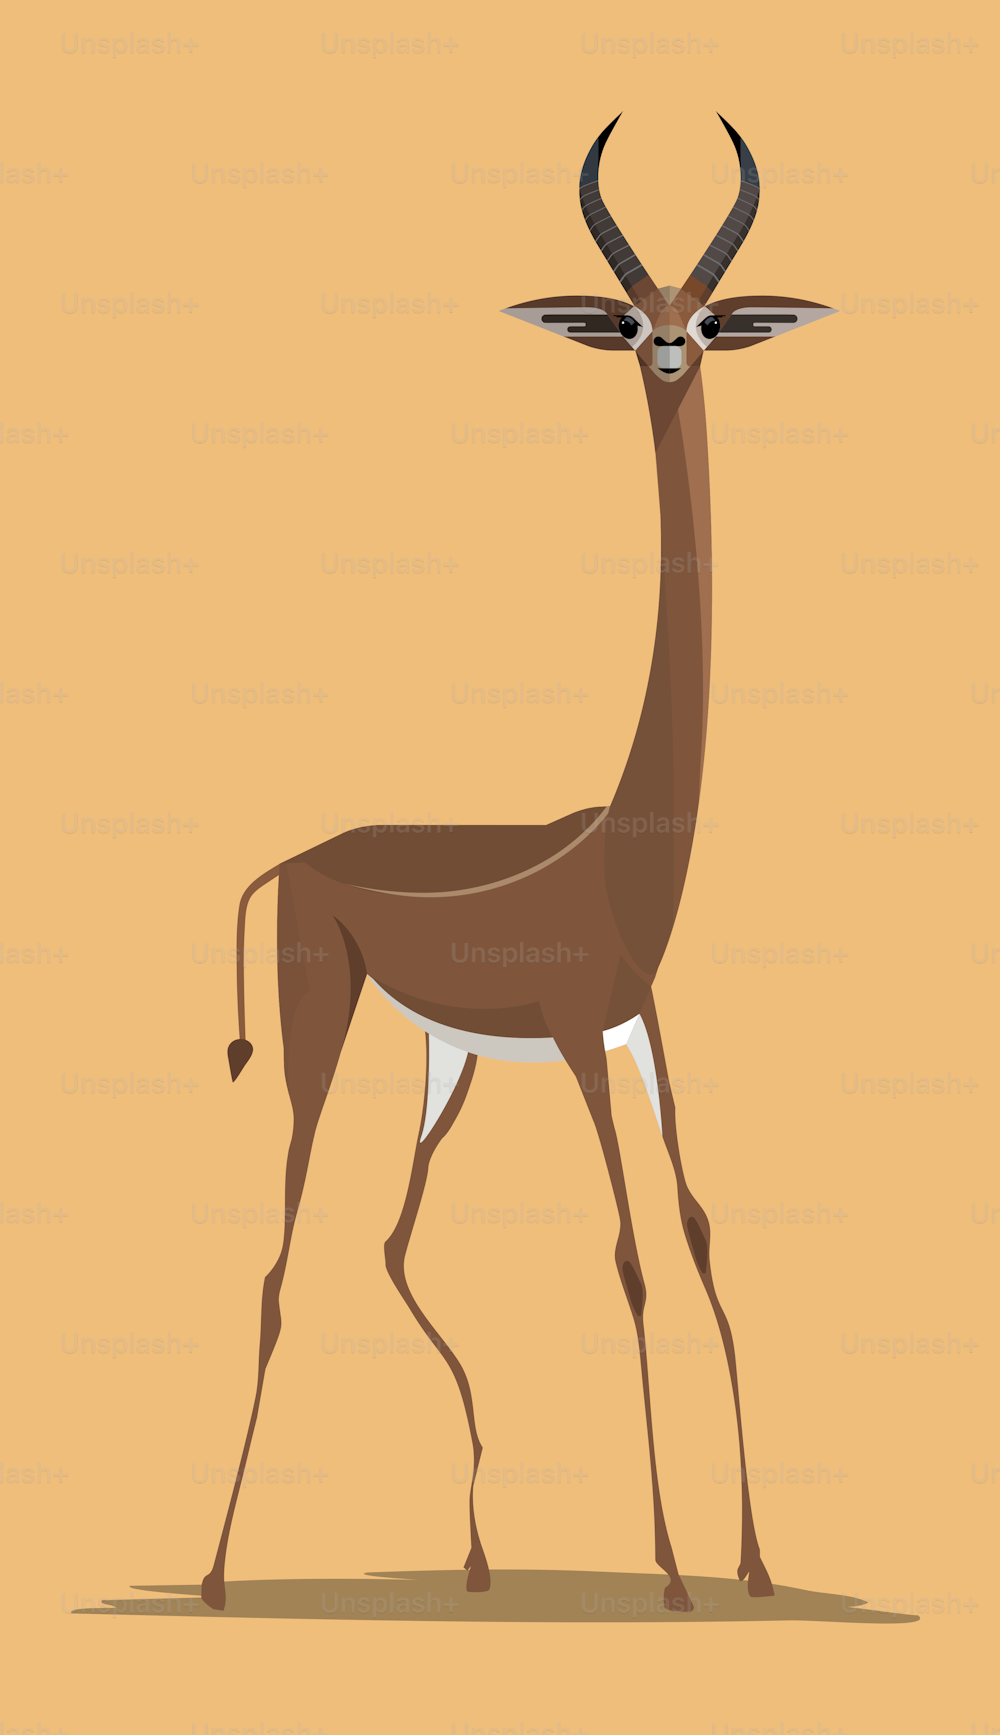 Gazela graciosa da girafa do gerenuk do macho no fundo laranja, imagem estilizada, ilustração do vetor